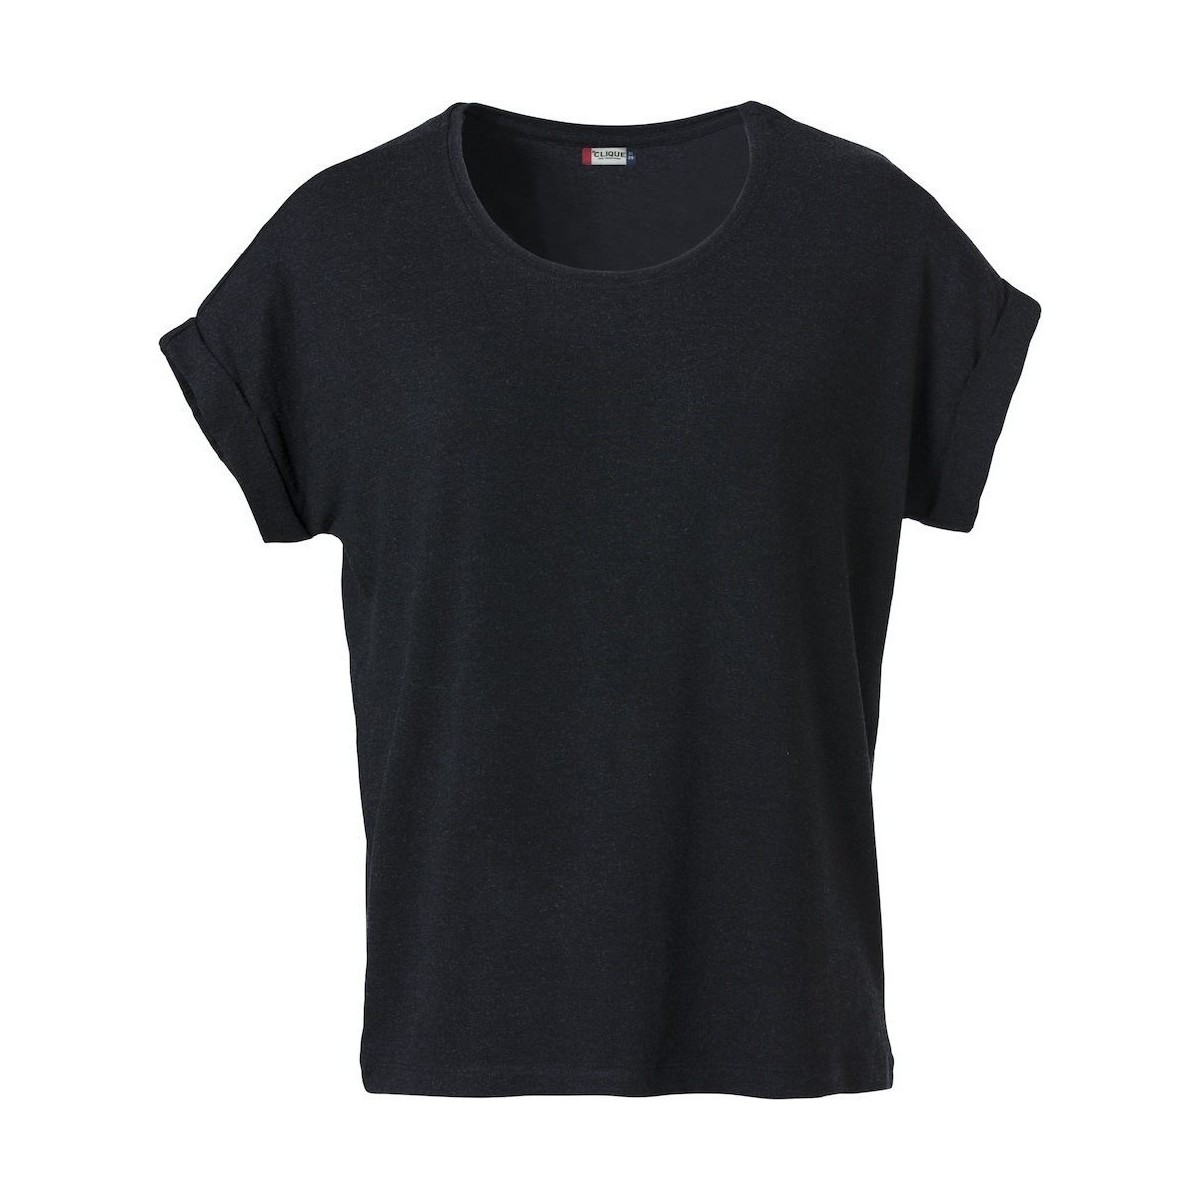 Vêtements Femme T-shirts manches longues C-Clique Katy Noir